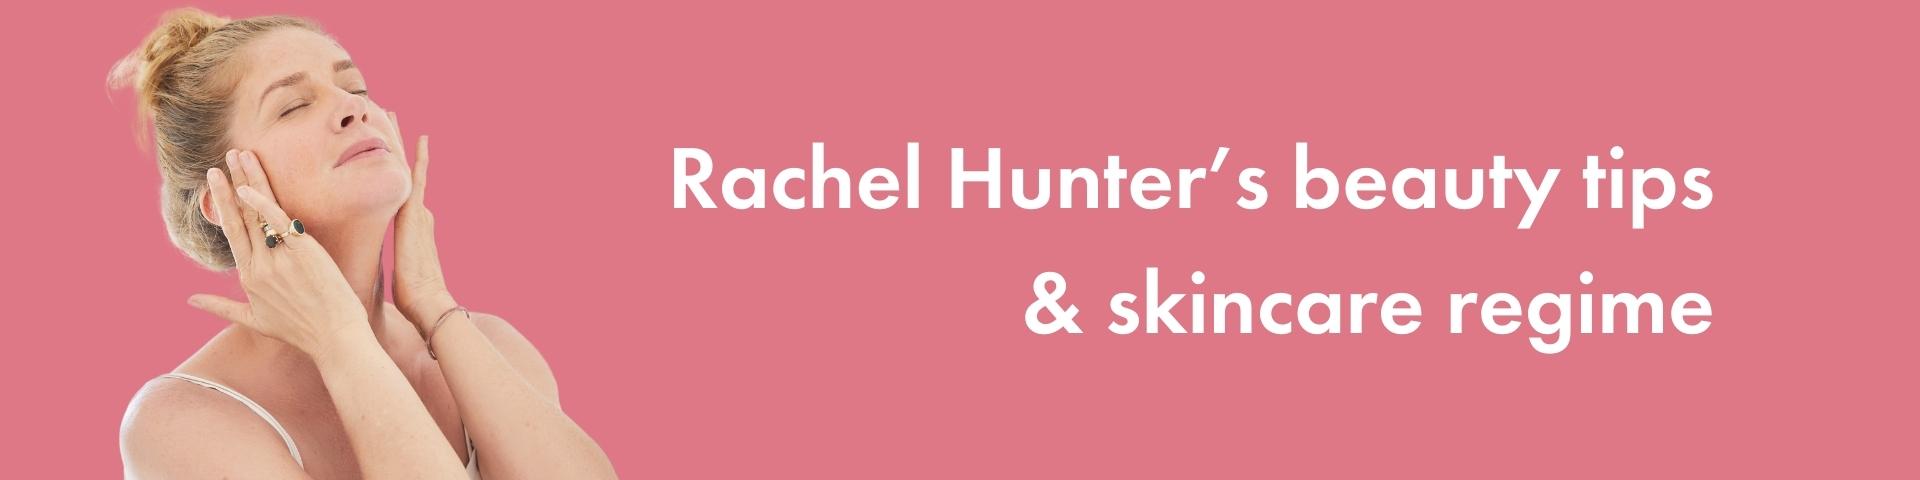 Rachel Hunter’s beauty tips and skincare regime